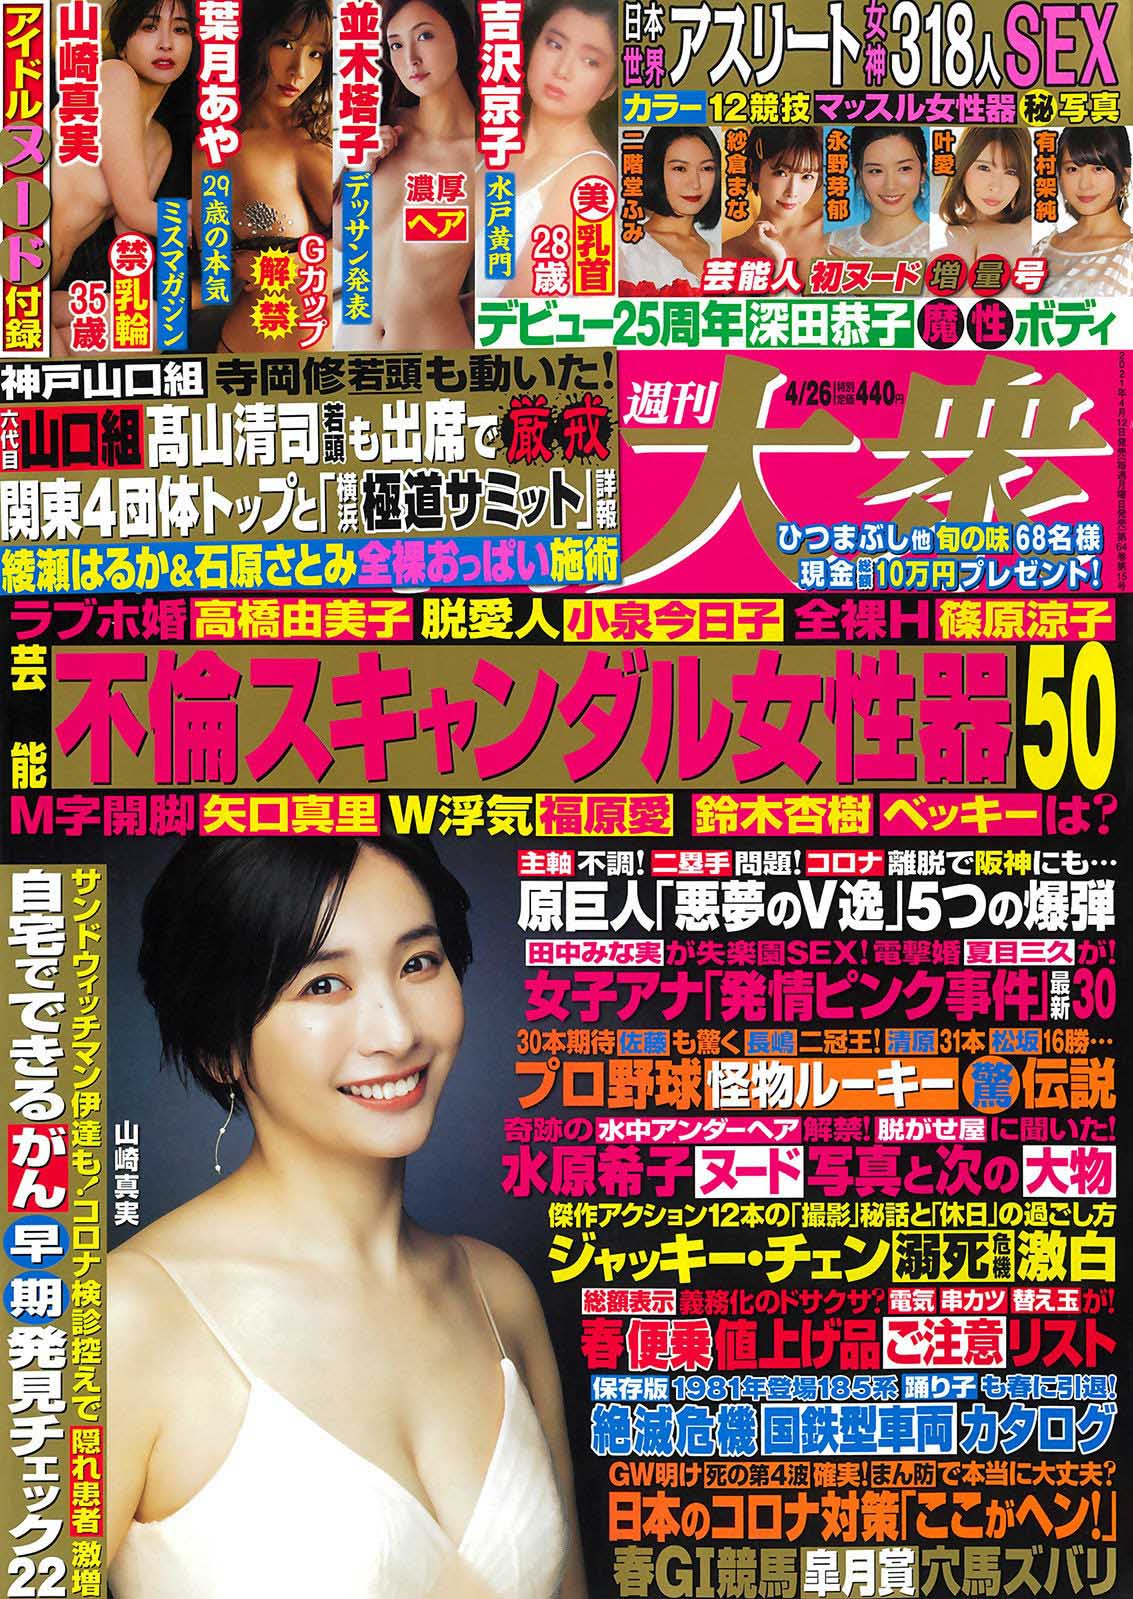 Mami Yamasaki 山崎真実, Shukan Taishu 2021.04.19 (週刊大衆 2021年4月19日号)